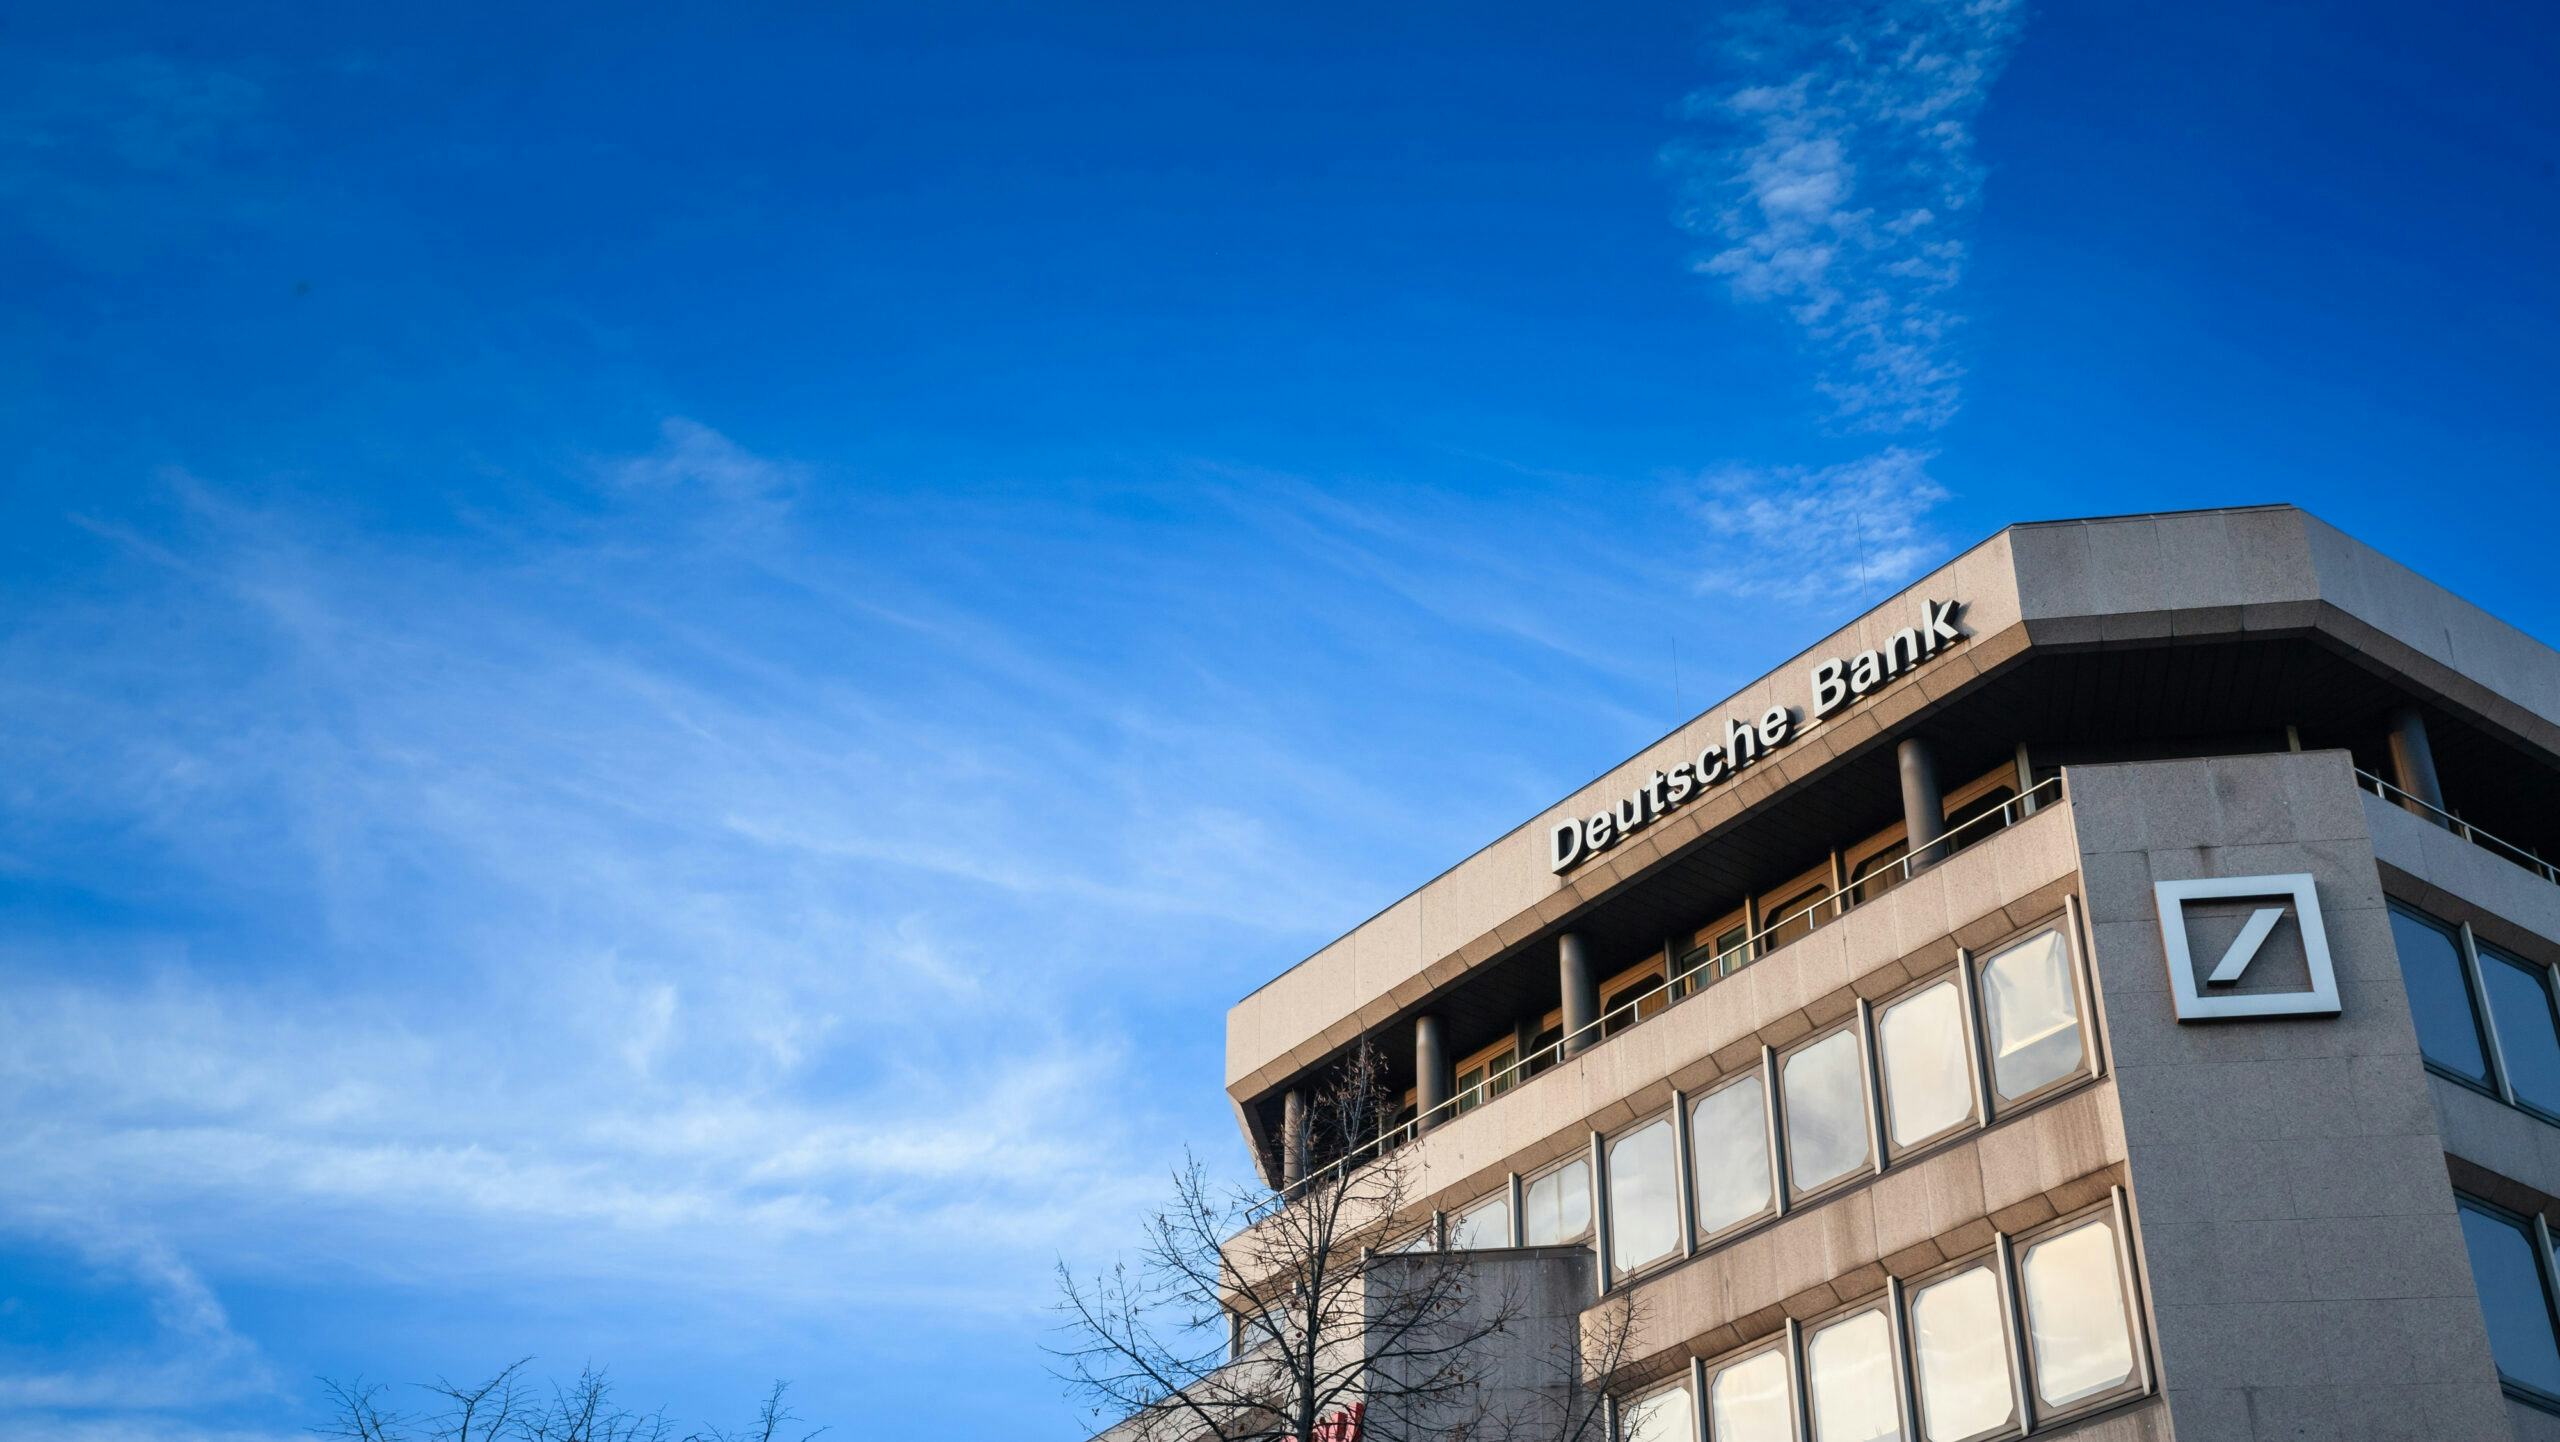 Kantoor van Deutsche Bank in Duisburg. Beeld: Shutterstock.